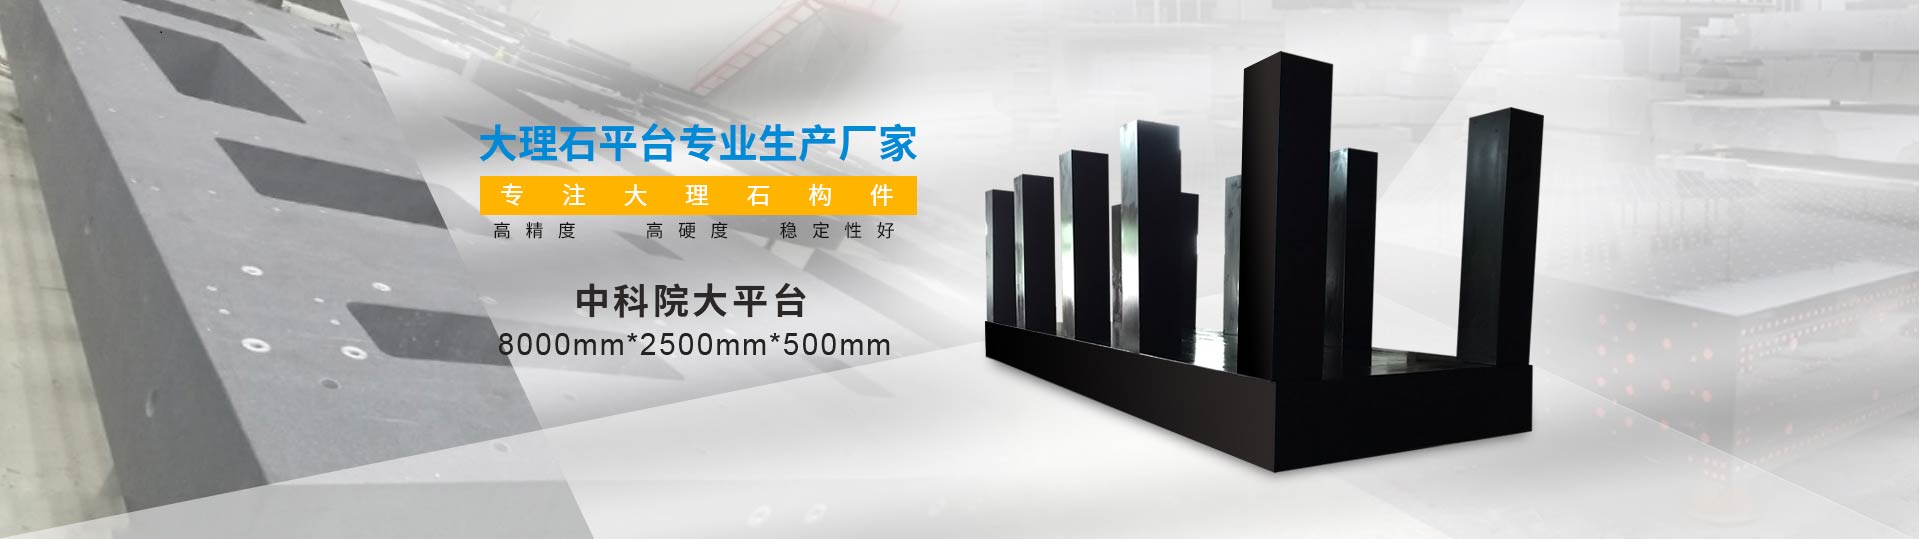 扬州高精度大理石平台厂家直售